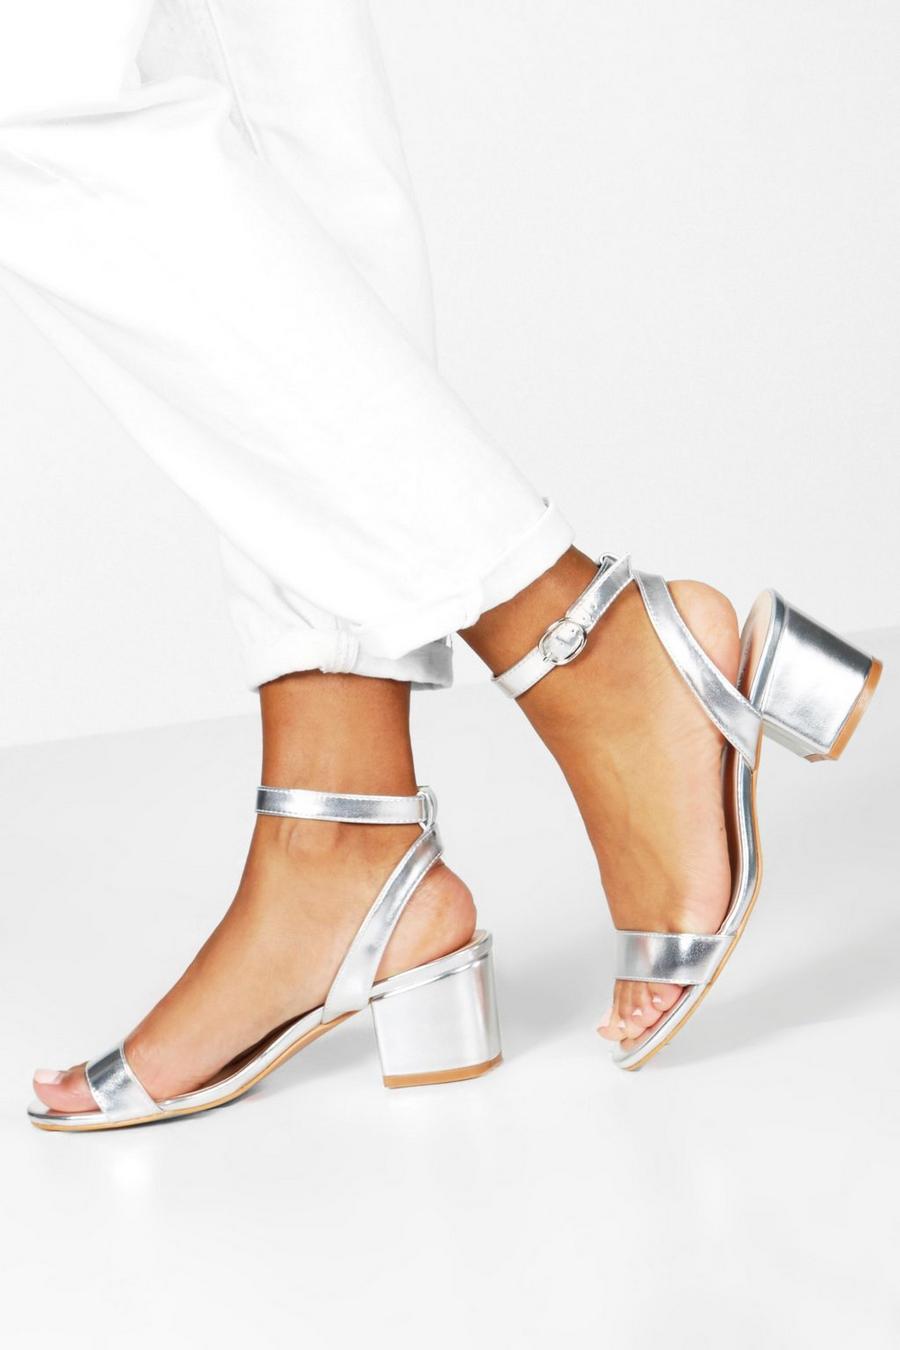 Sandales effet métallisé à talon carré et brides, Argent silver